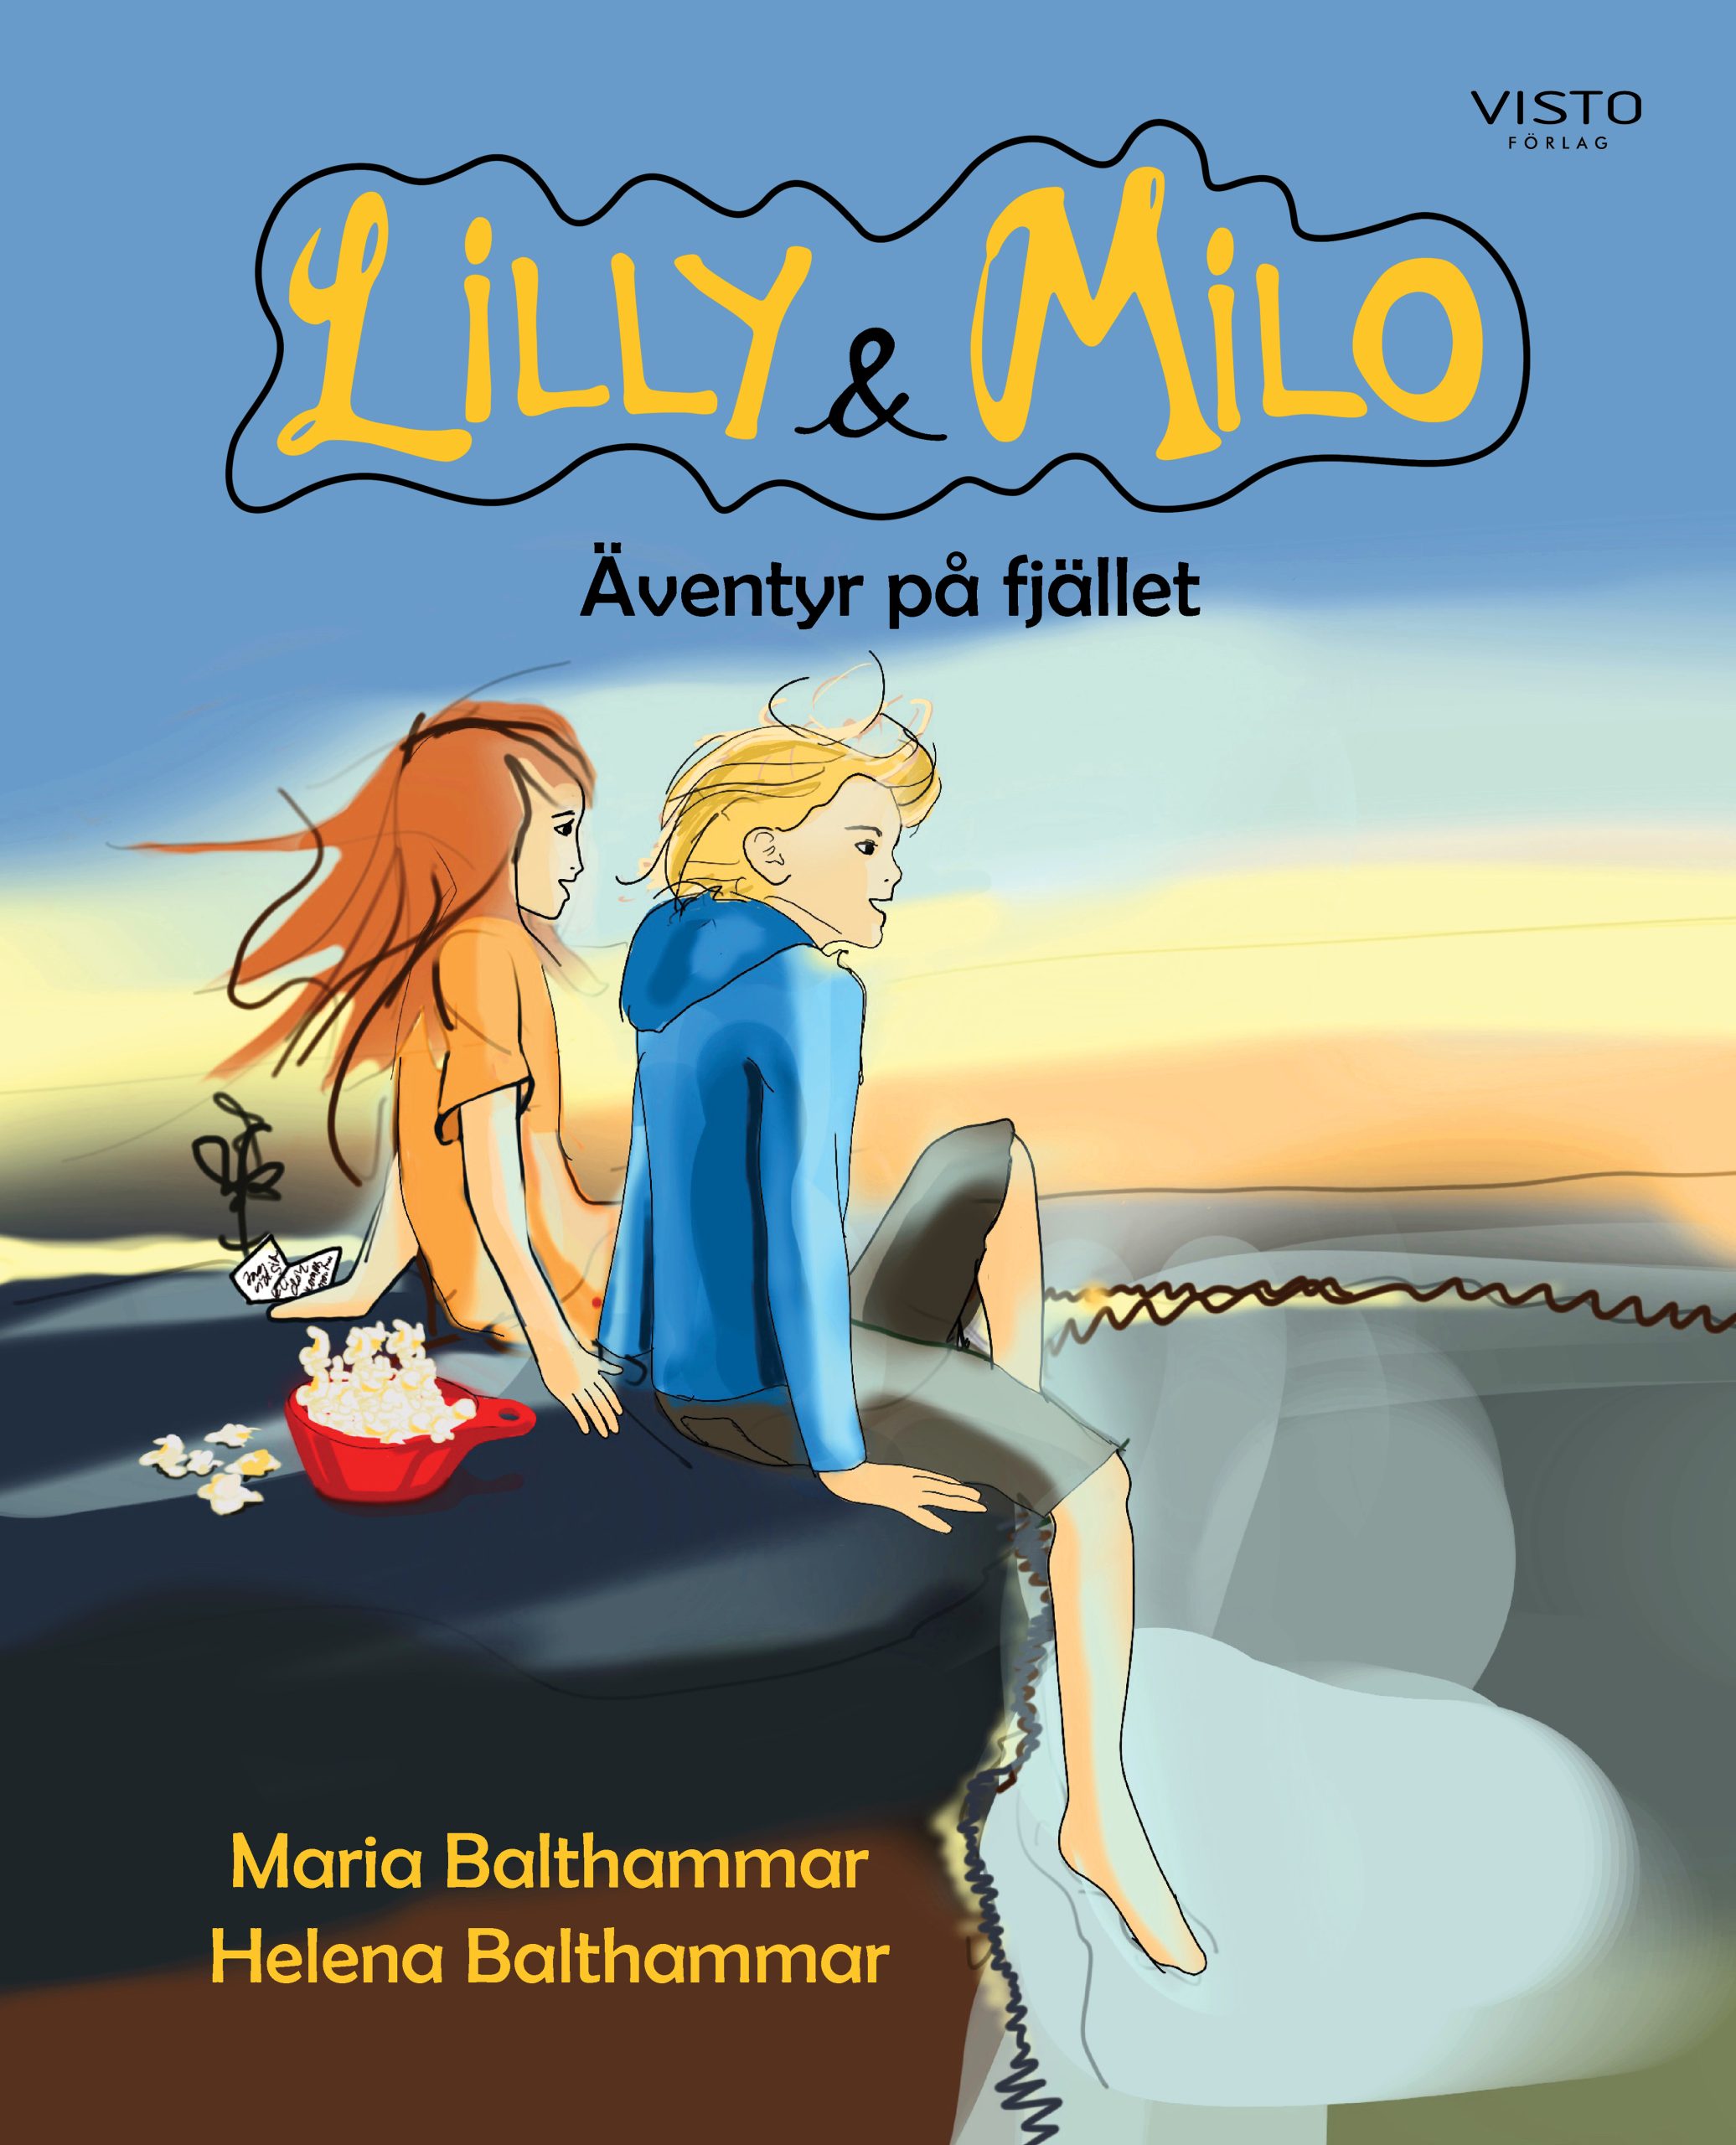 Lilly & Milo äventyr på fjället